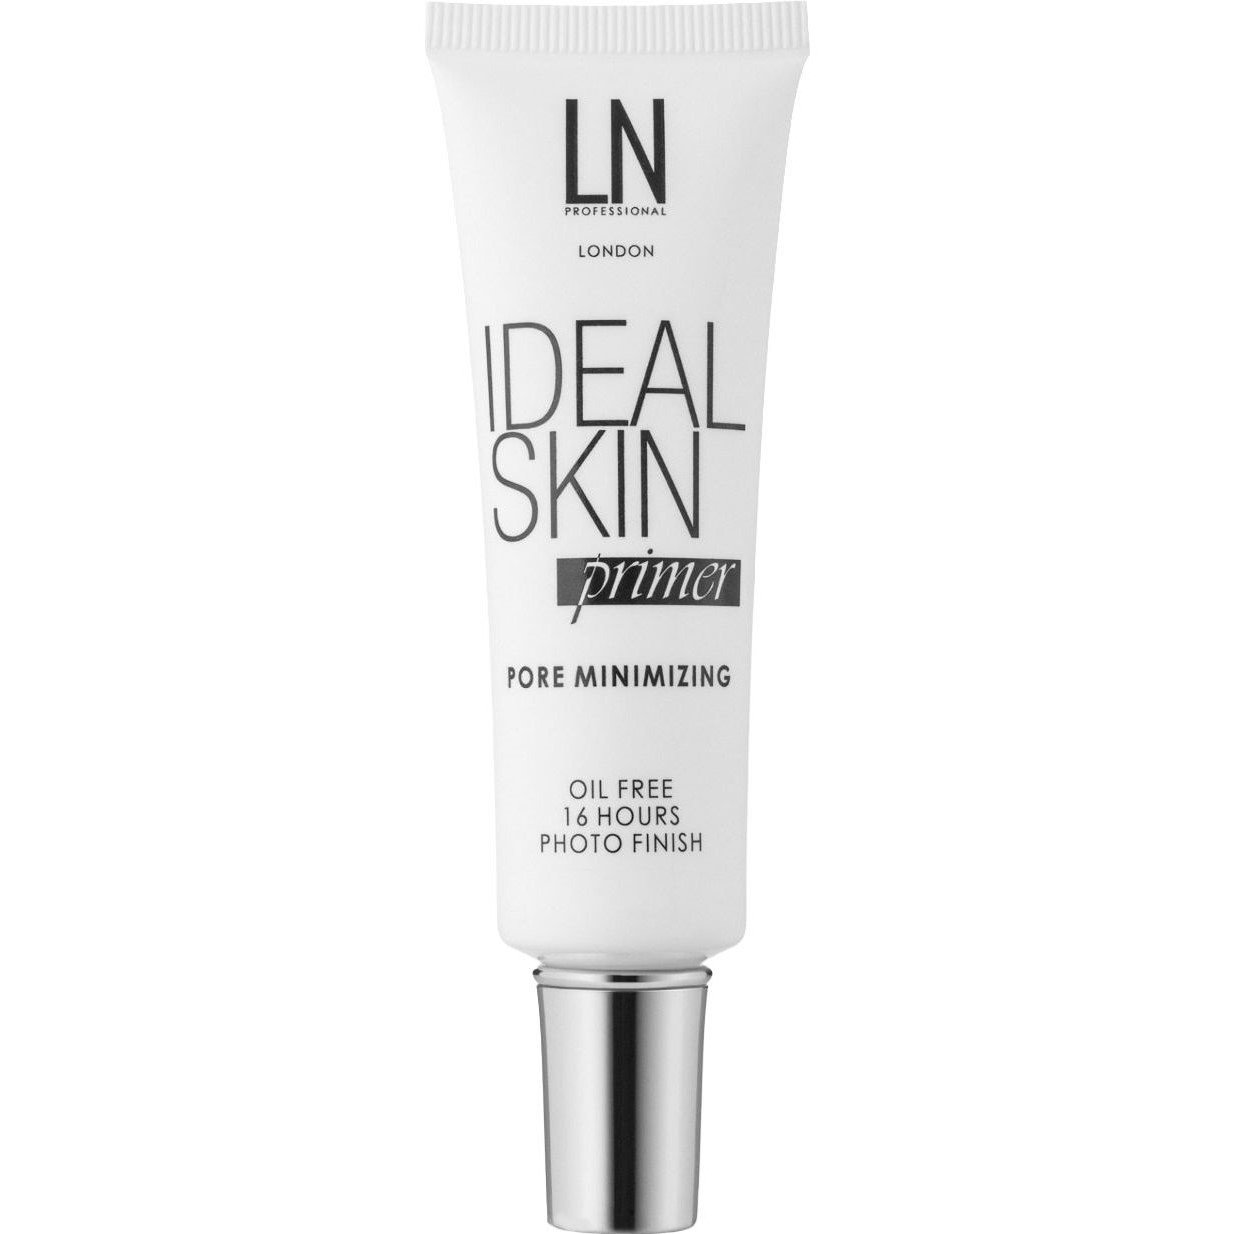 Основа под макияж LN Professional Ideal Skin Primer 30 мл - фото 1